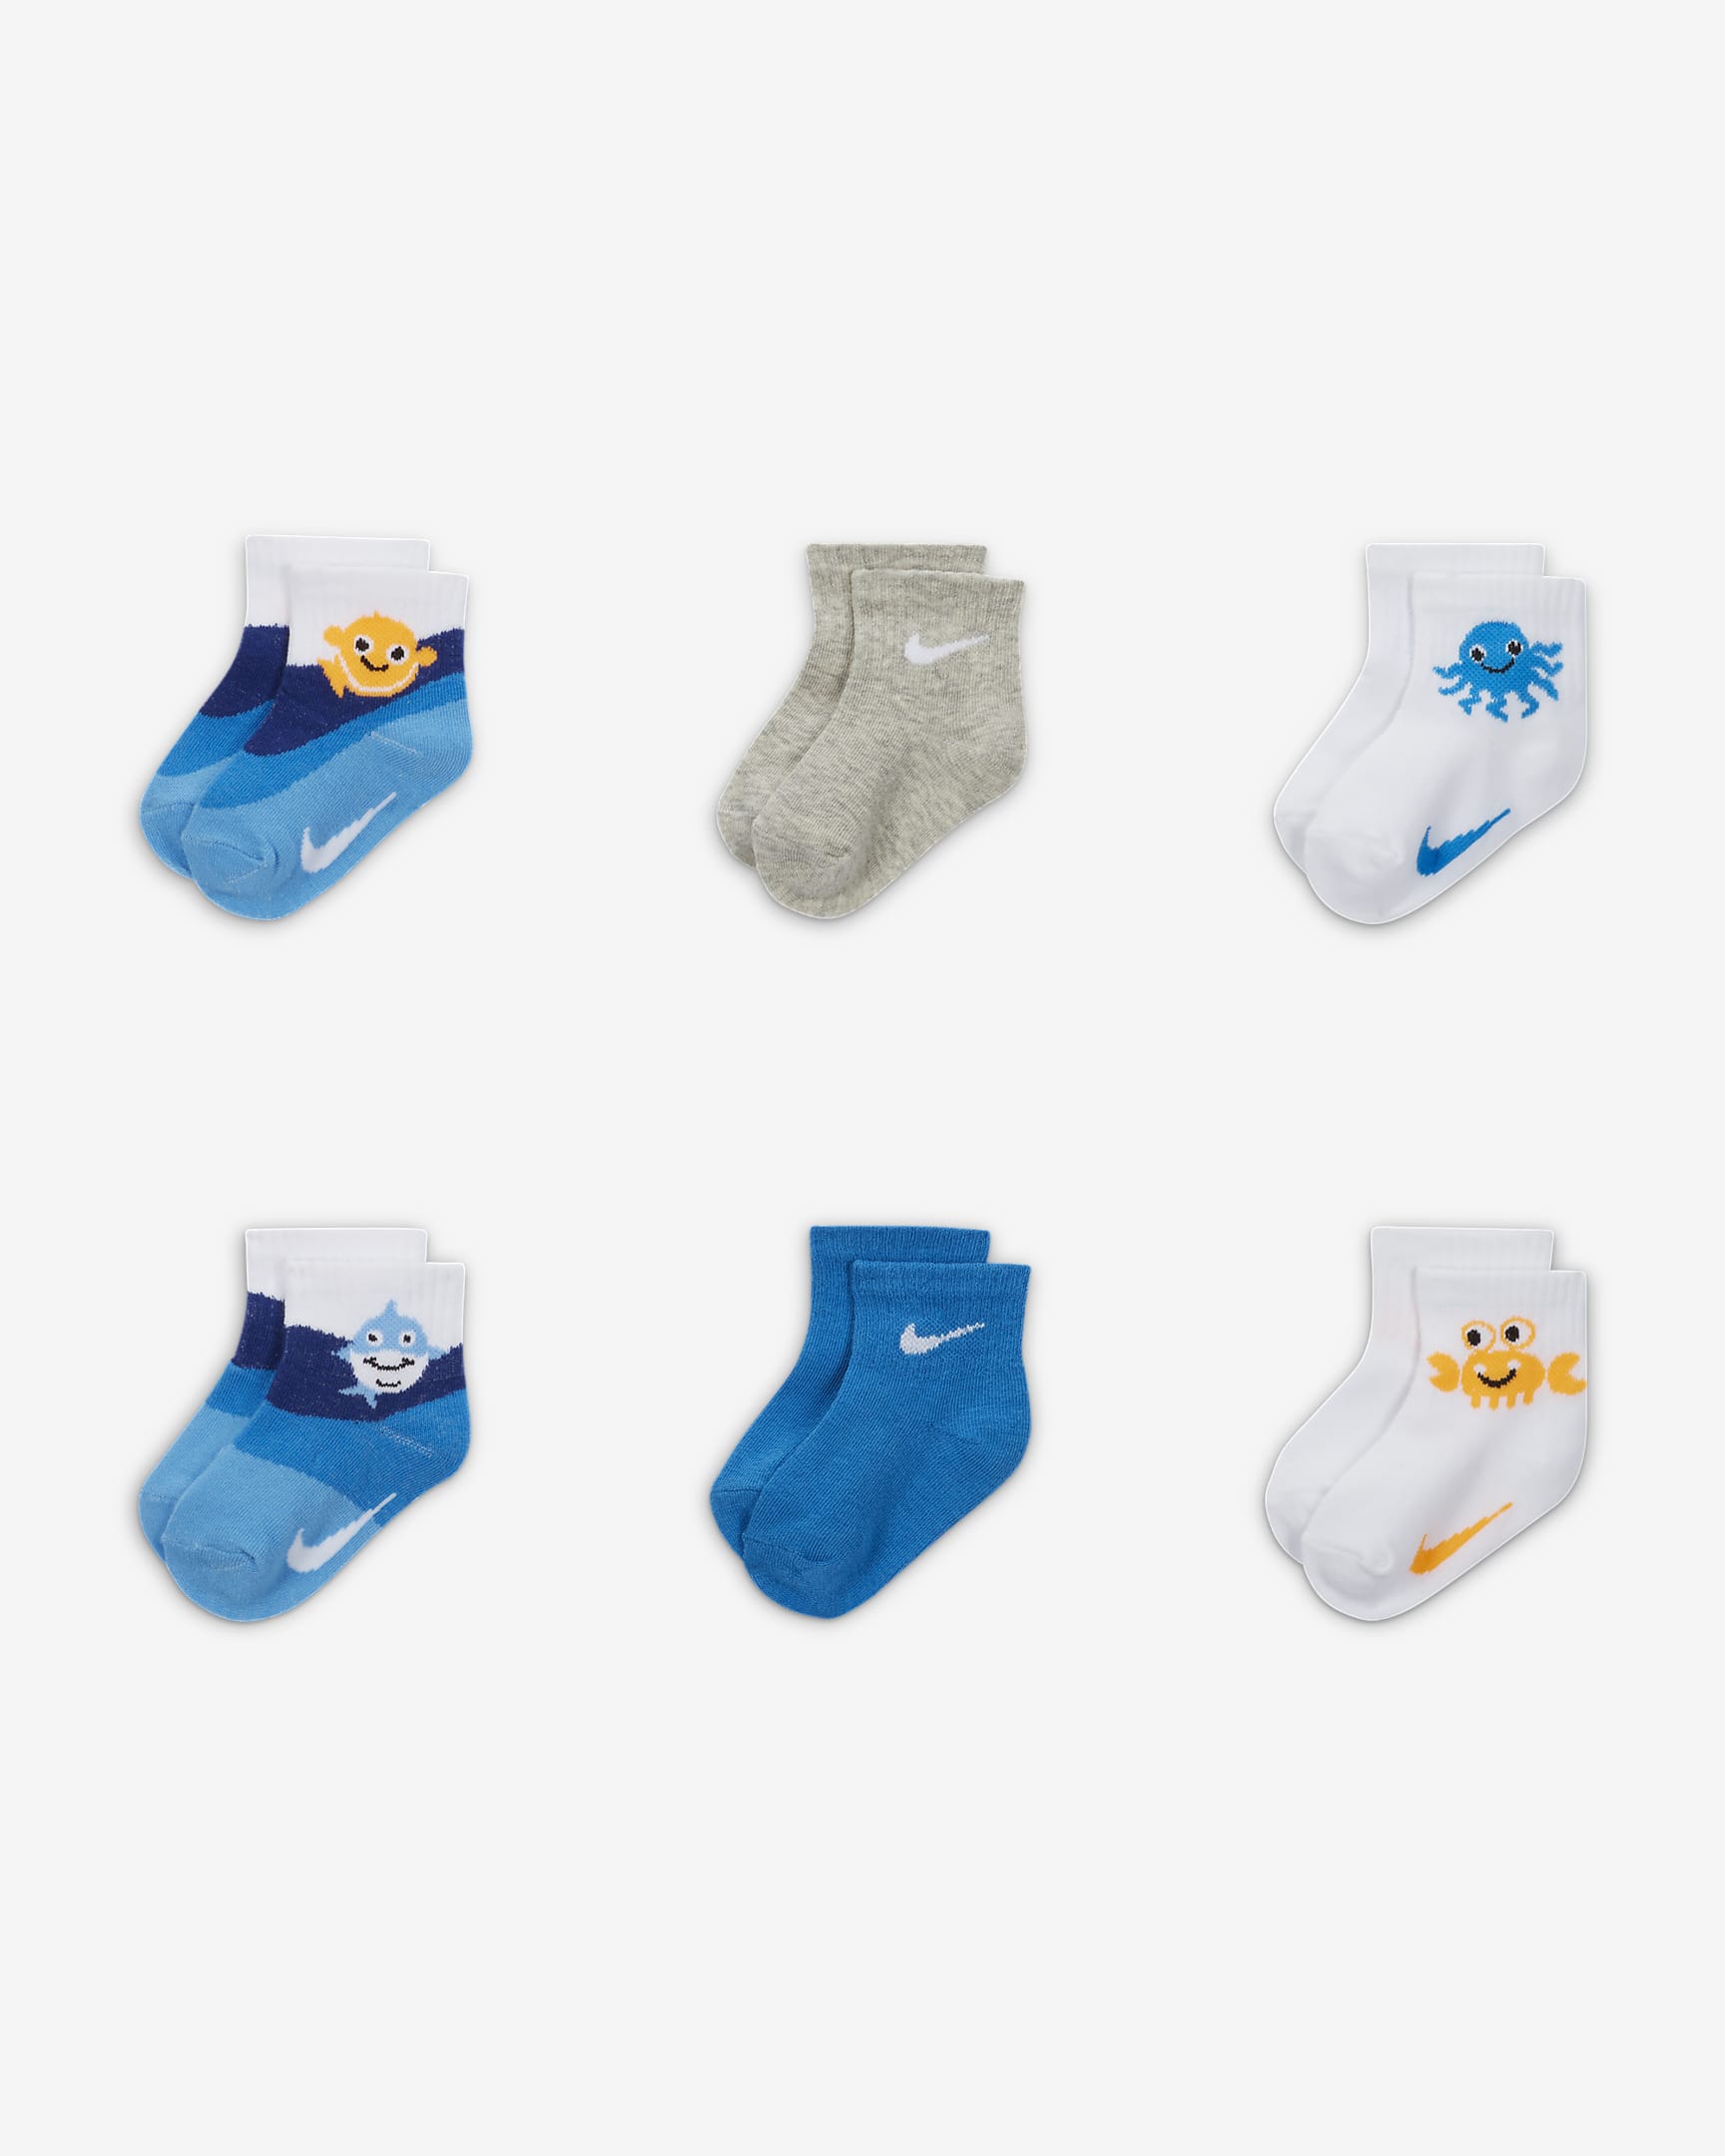 Nike Coral Reef Infant Socks (6 Pairs) Baby Socks. Nike JP